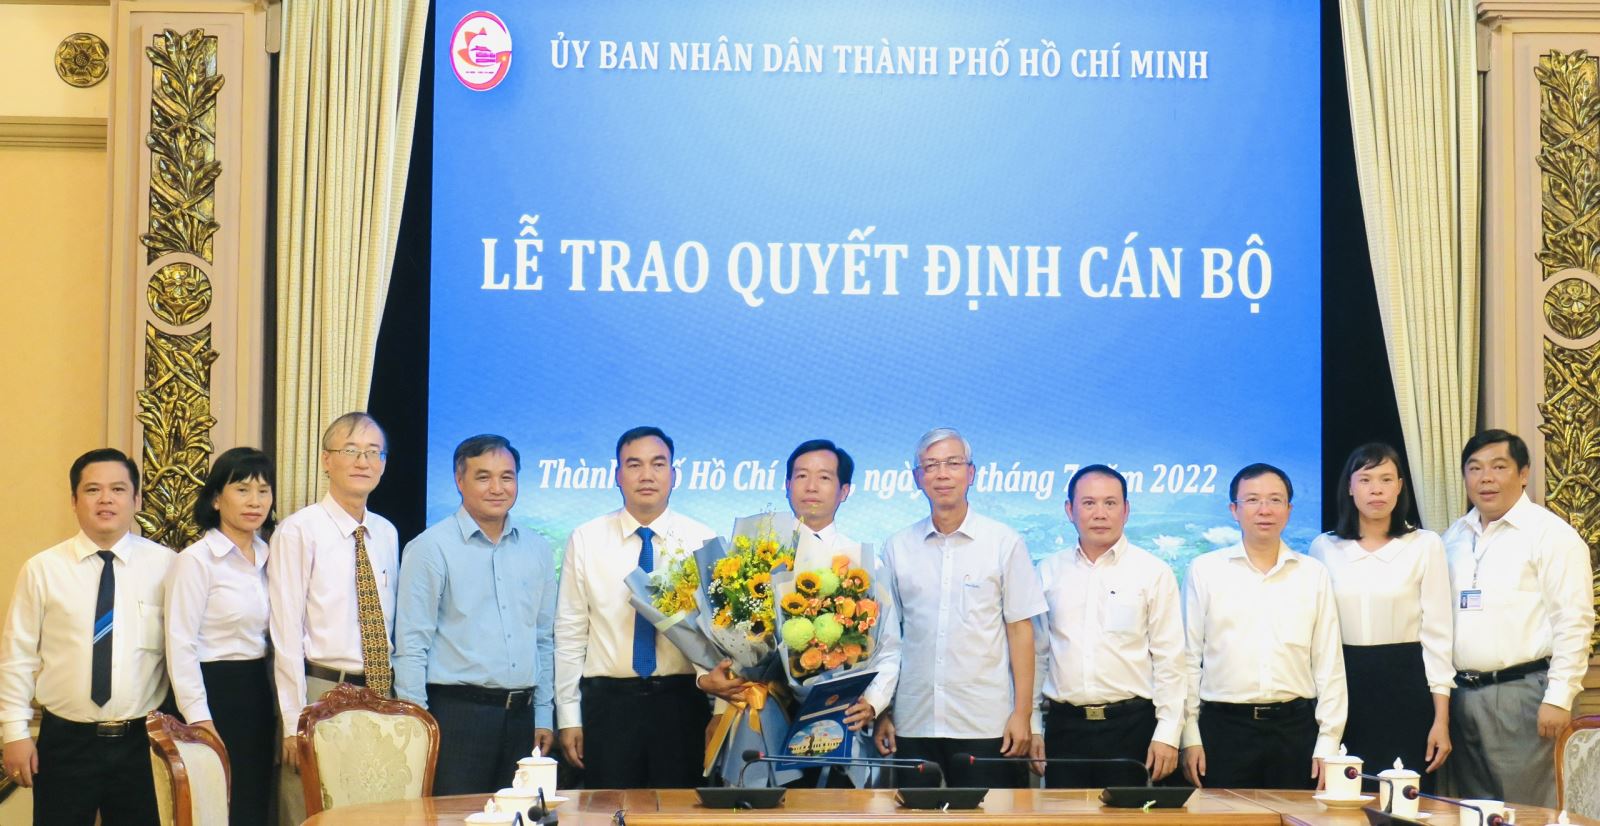 Ông Nguyễn Thanh Hiền, Giám đốc Trung tâm Nghiên cứu và phát triển Nông nghiệp Công nghệ cao được bổ nhiệm giữ chức Phó Trưởng ban BQL Khu Nông nghiệp Công nghệ cao TP.HCM.